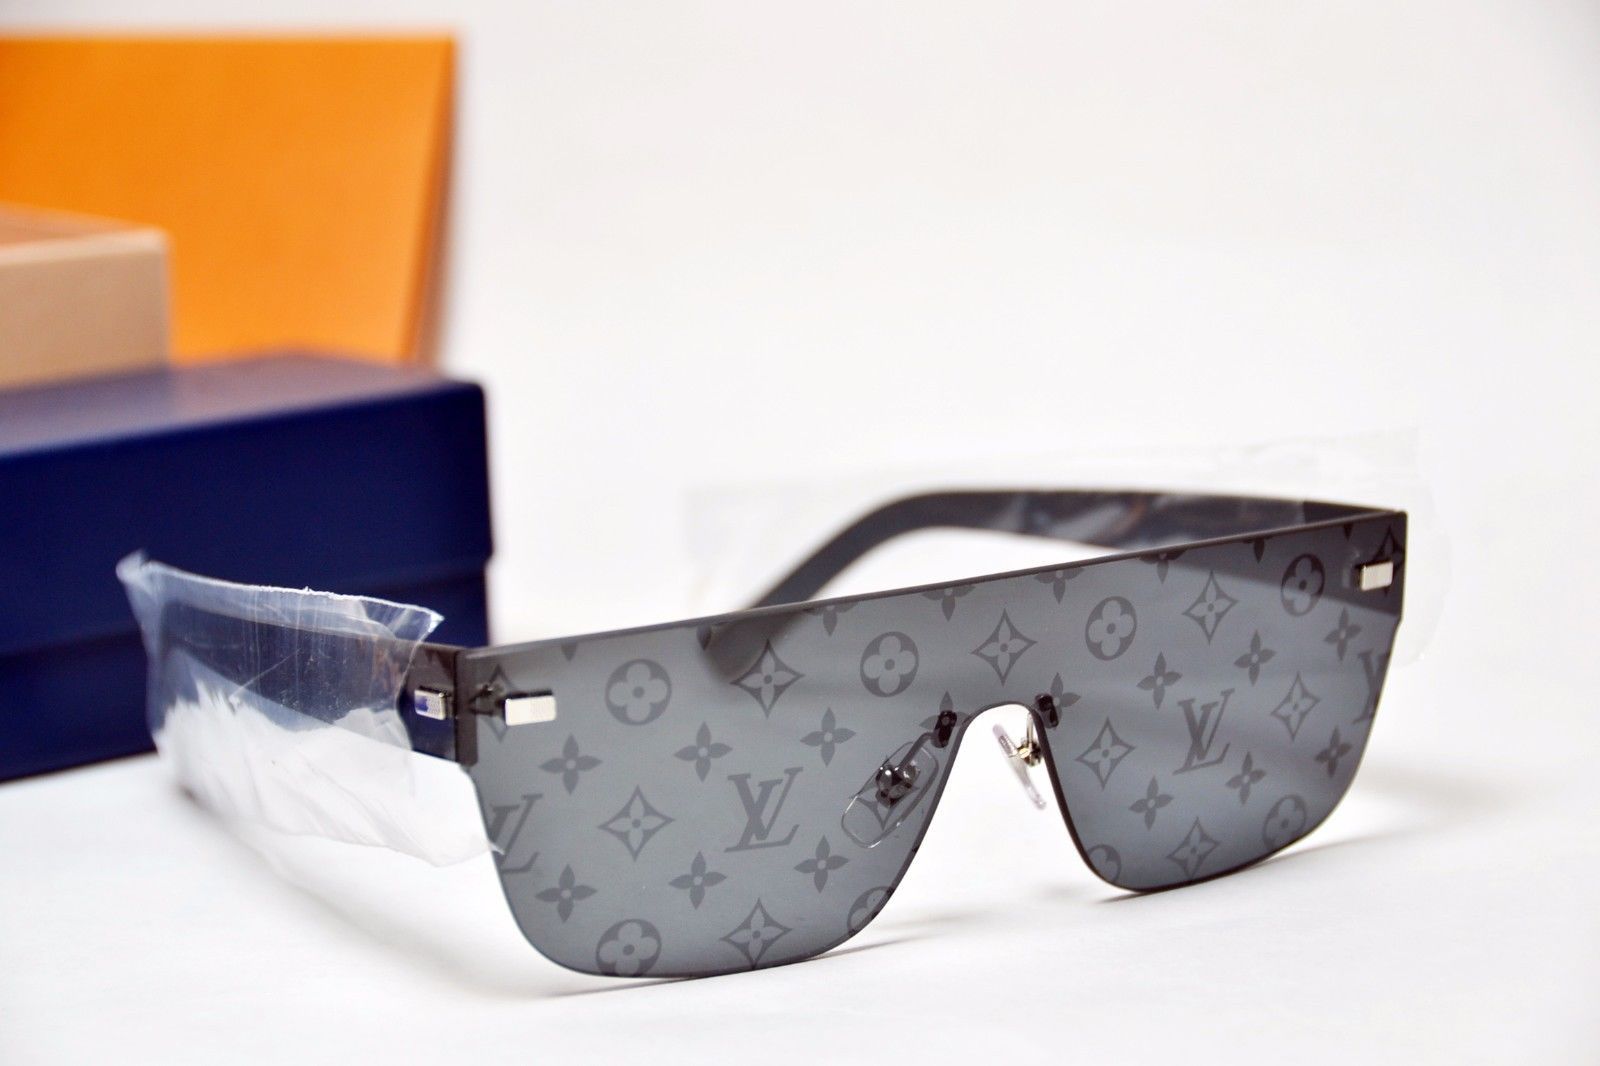 Louis Vuitton, Accessories, Louis Vuitton X Supreme Mensunisex City Mask  Monogram Shield Sunglasses